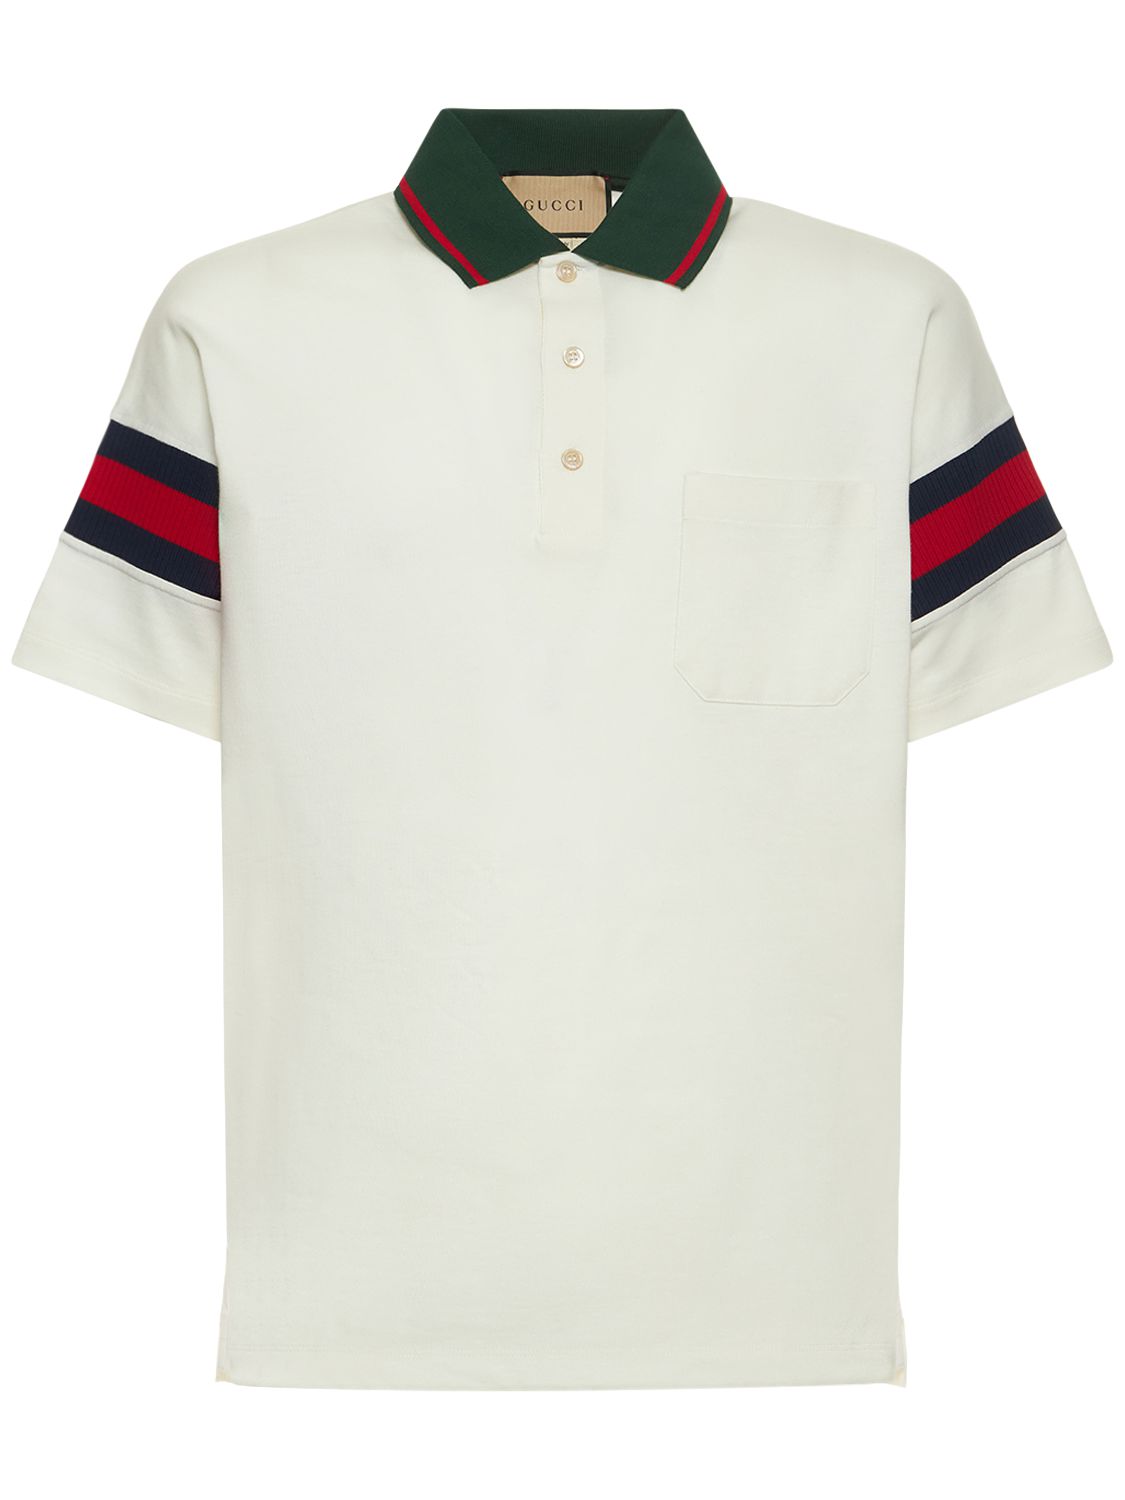 Cotton Polo Shirt - GUCCI - Modalova